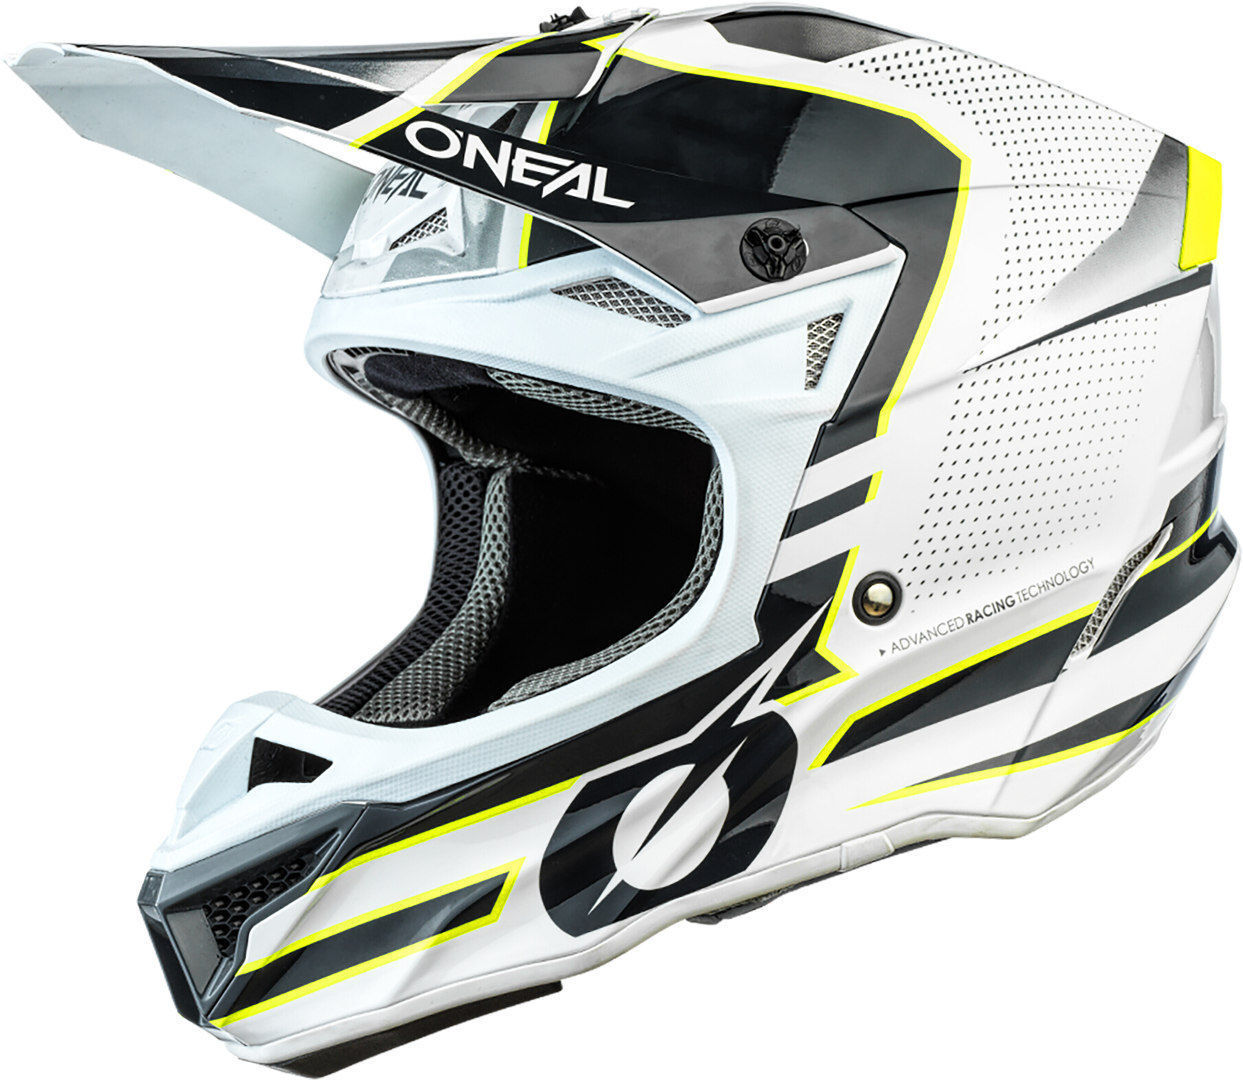 Oneal 5Series Polyacrylite Sleek Capacete de Motocross